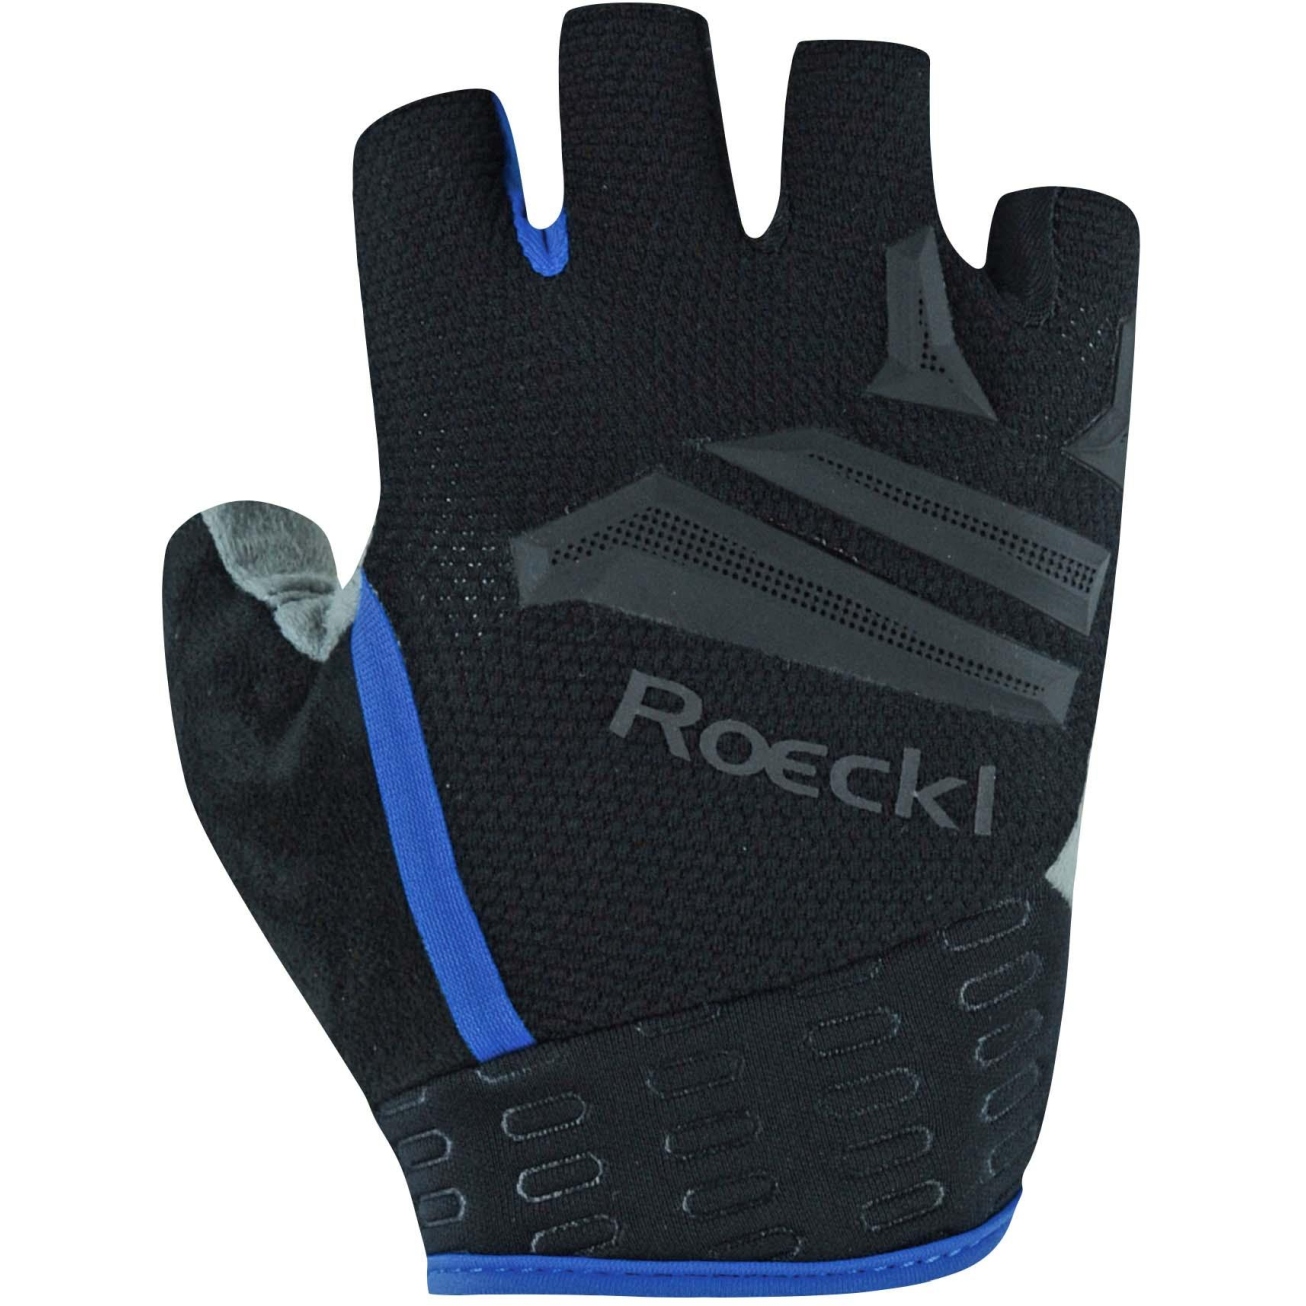 Produktbild von Roeckl Sports Iseler Fahrradhandschuhe - black/dazzling blue 9511